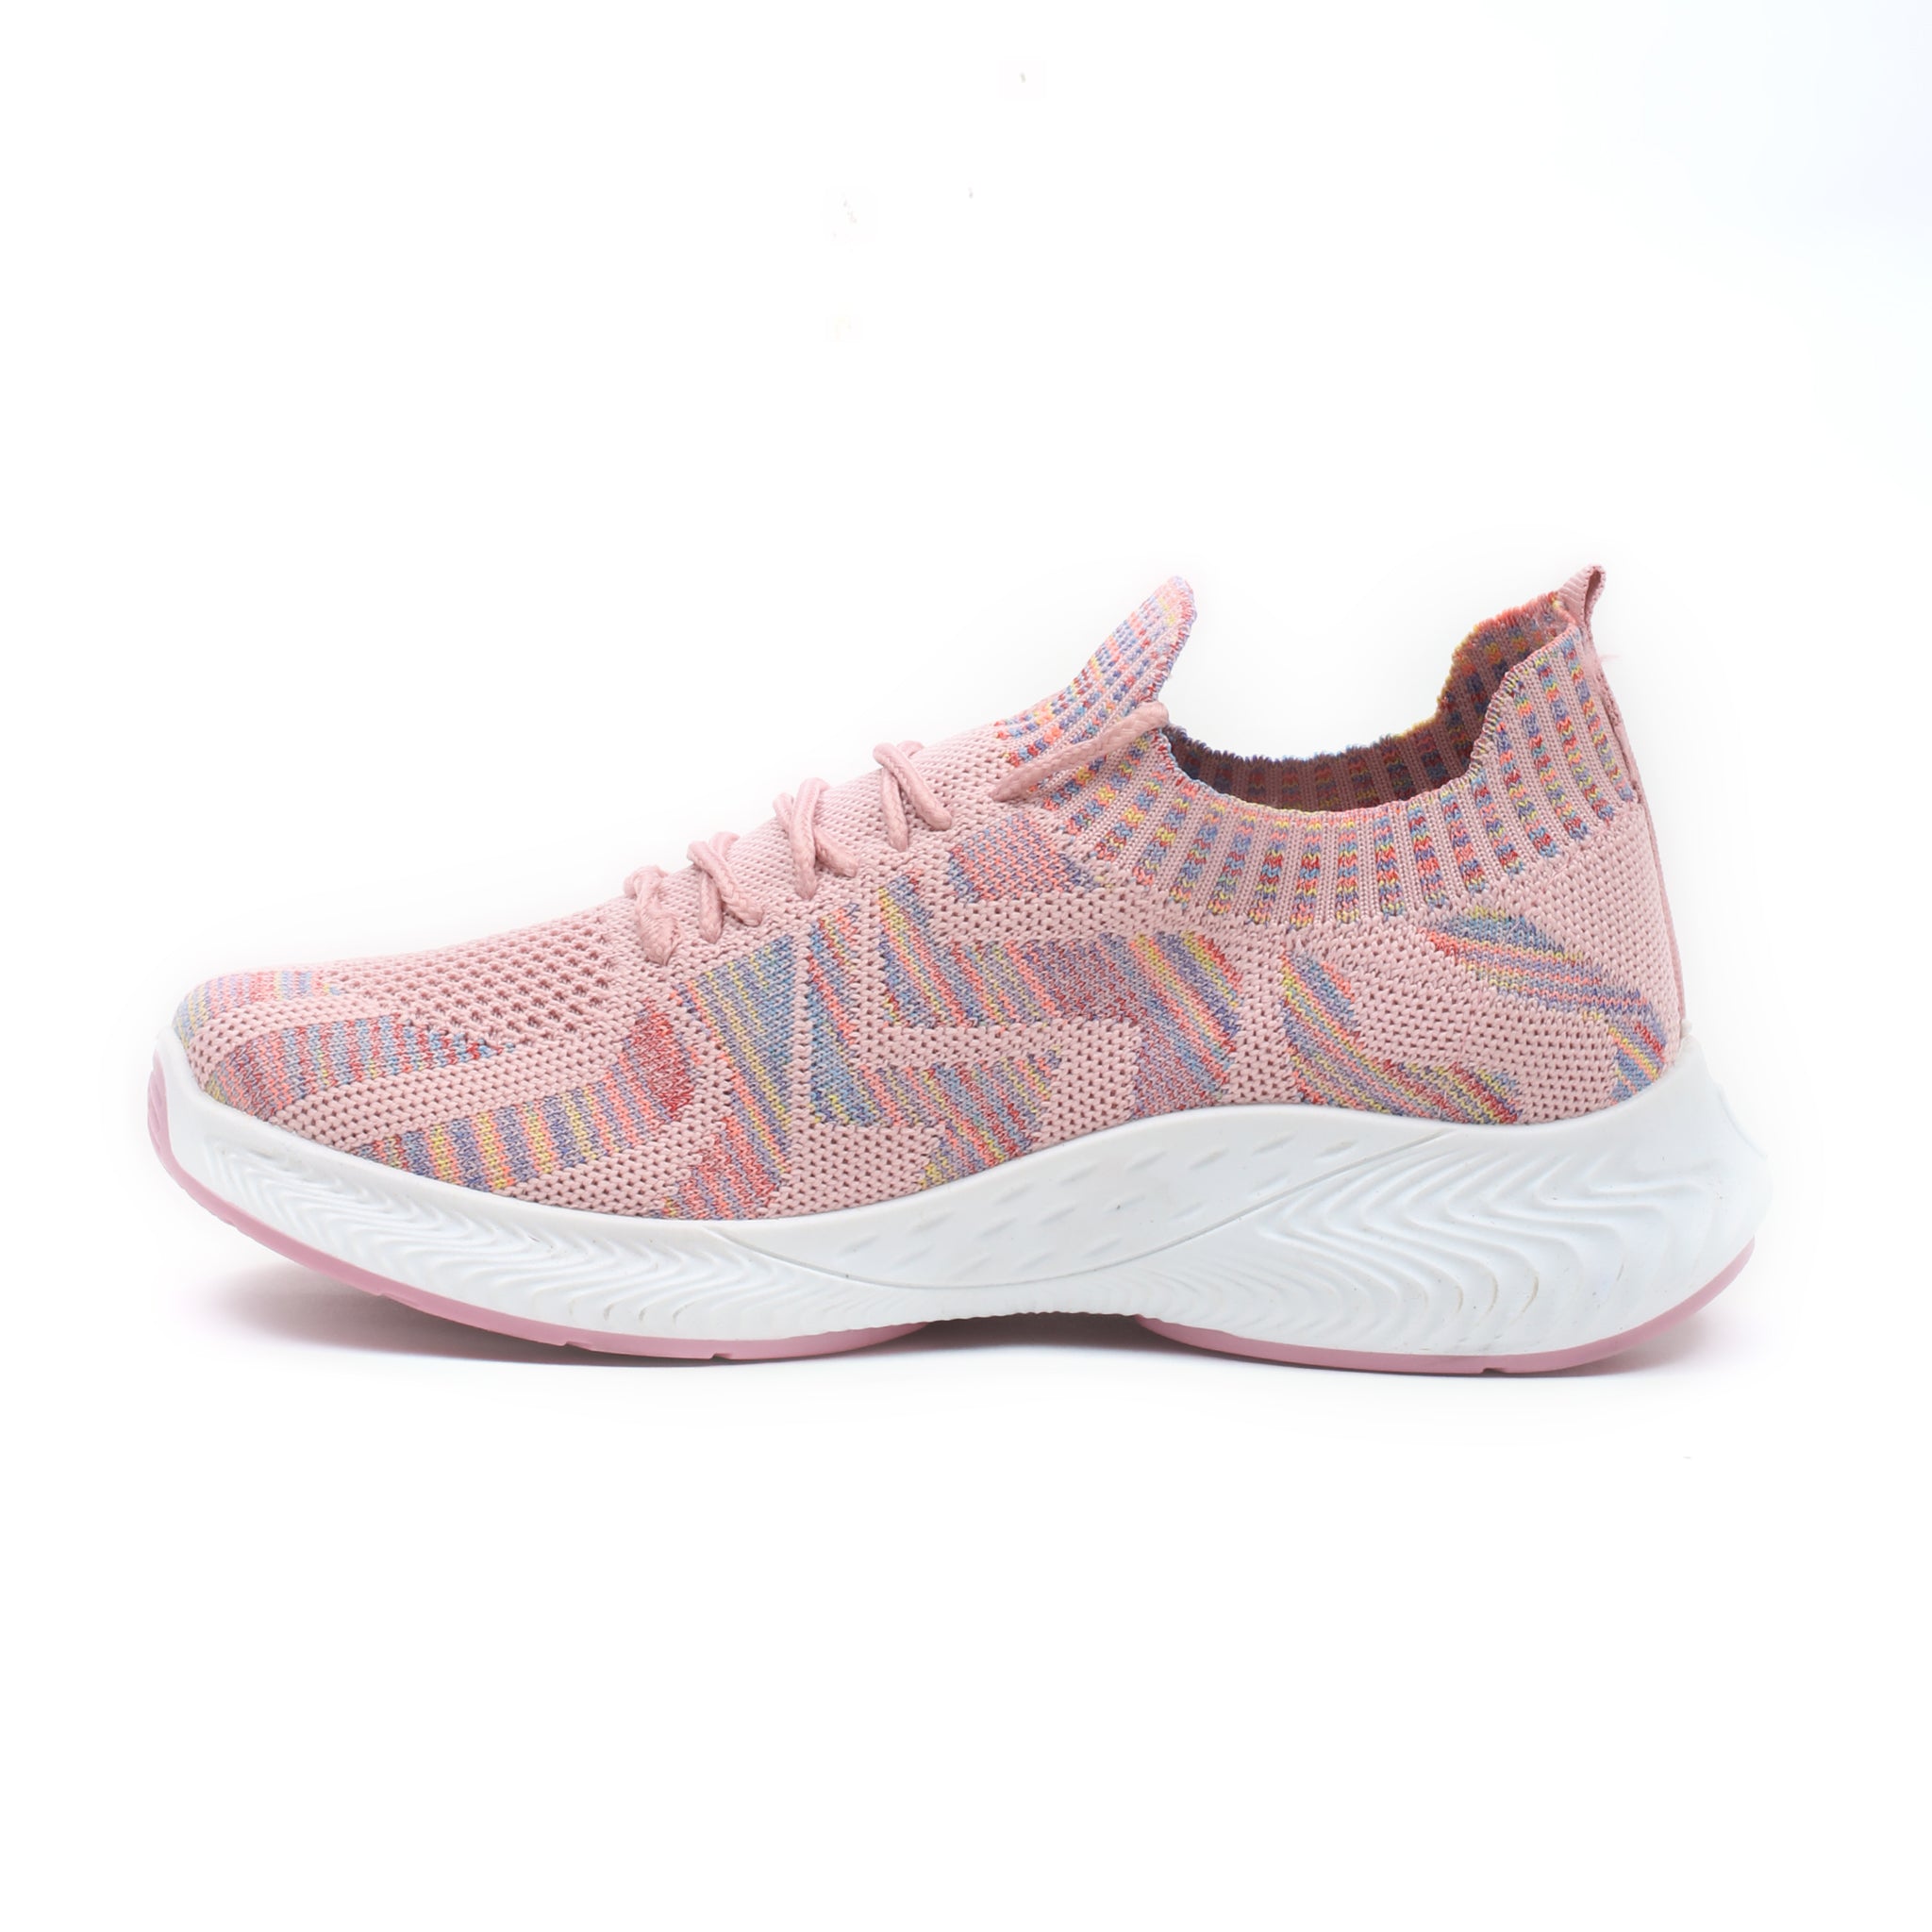 Impakto Blush Bloom Women's Pink Running Shoes